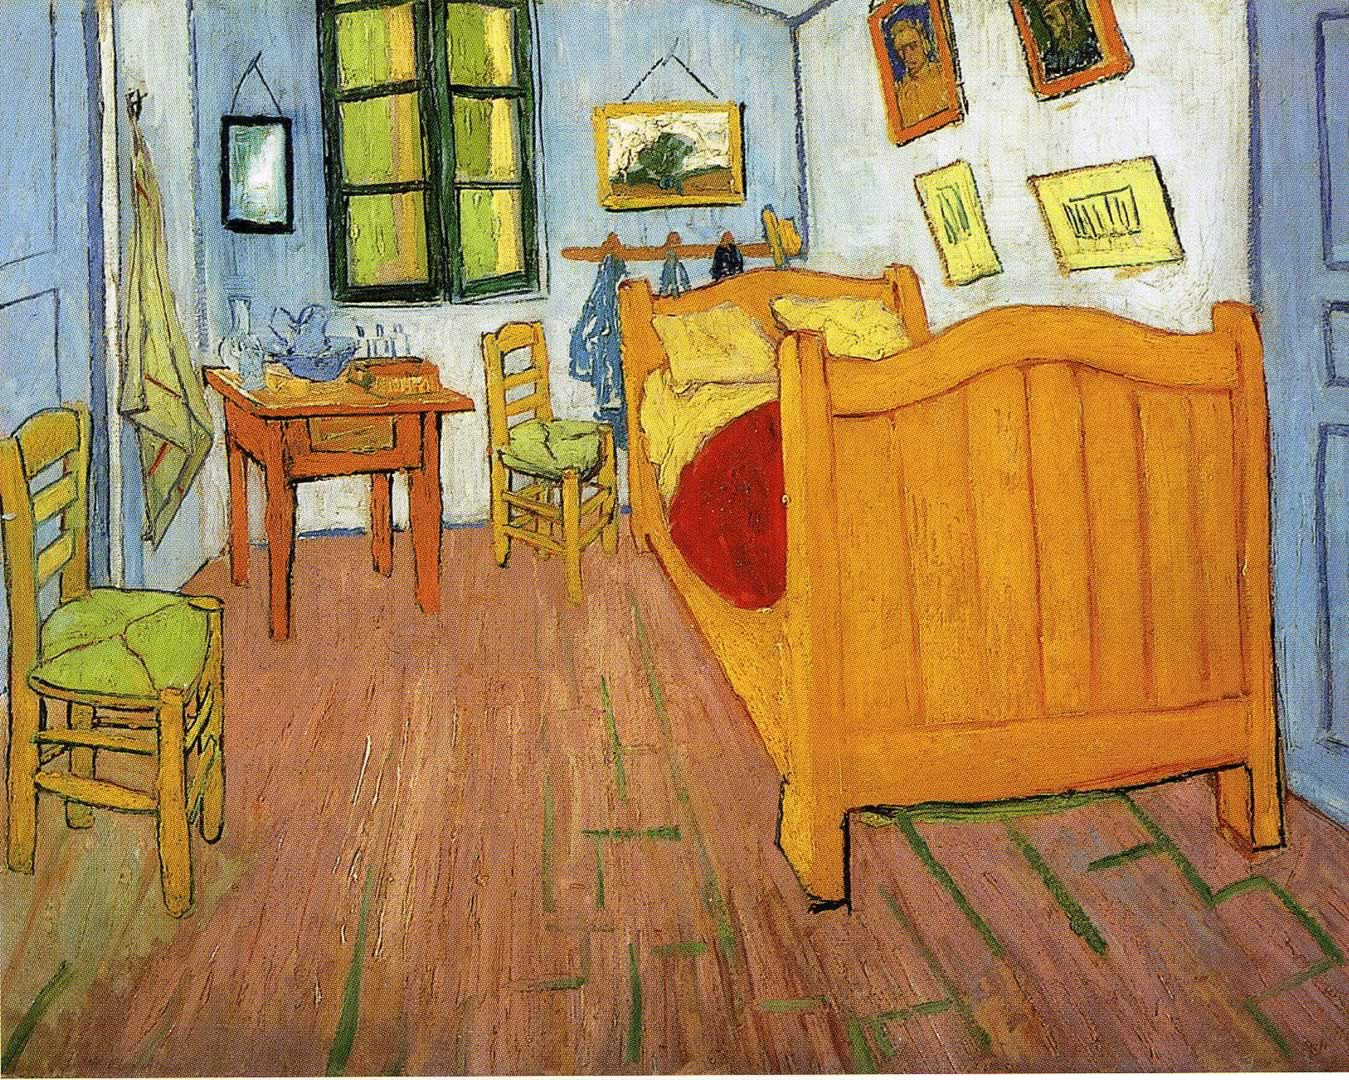 Van Gogh Bedroom Paintings
 Vincents Bedroom In Arles Vincent Van Gogh Wallpaper Image